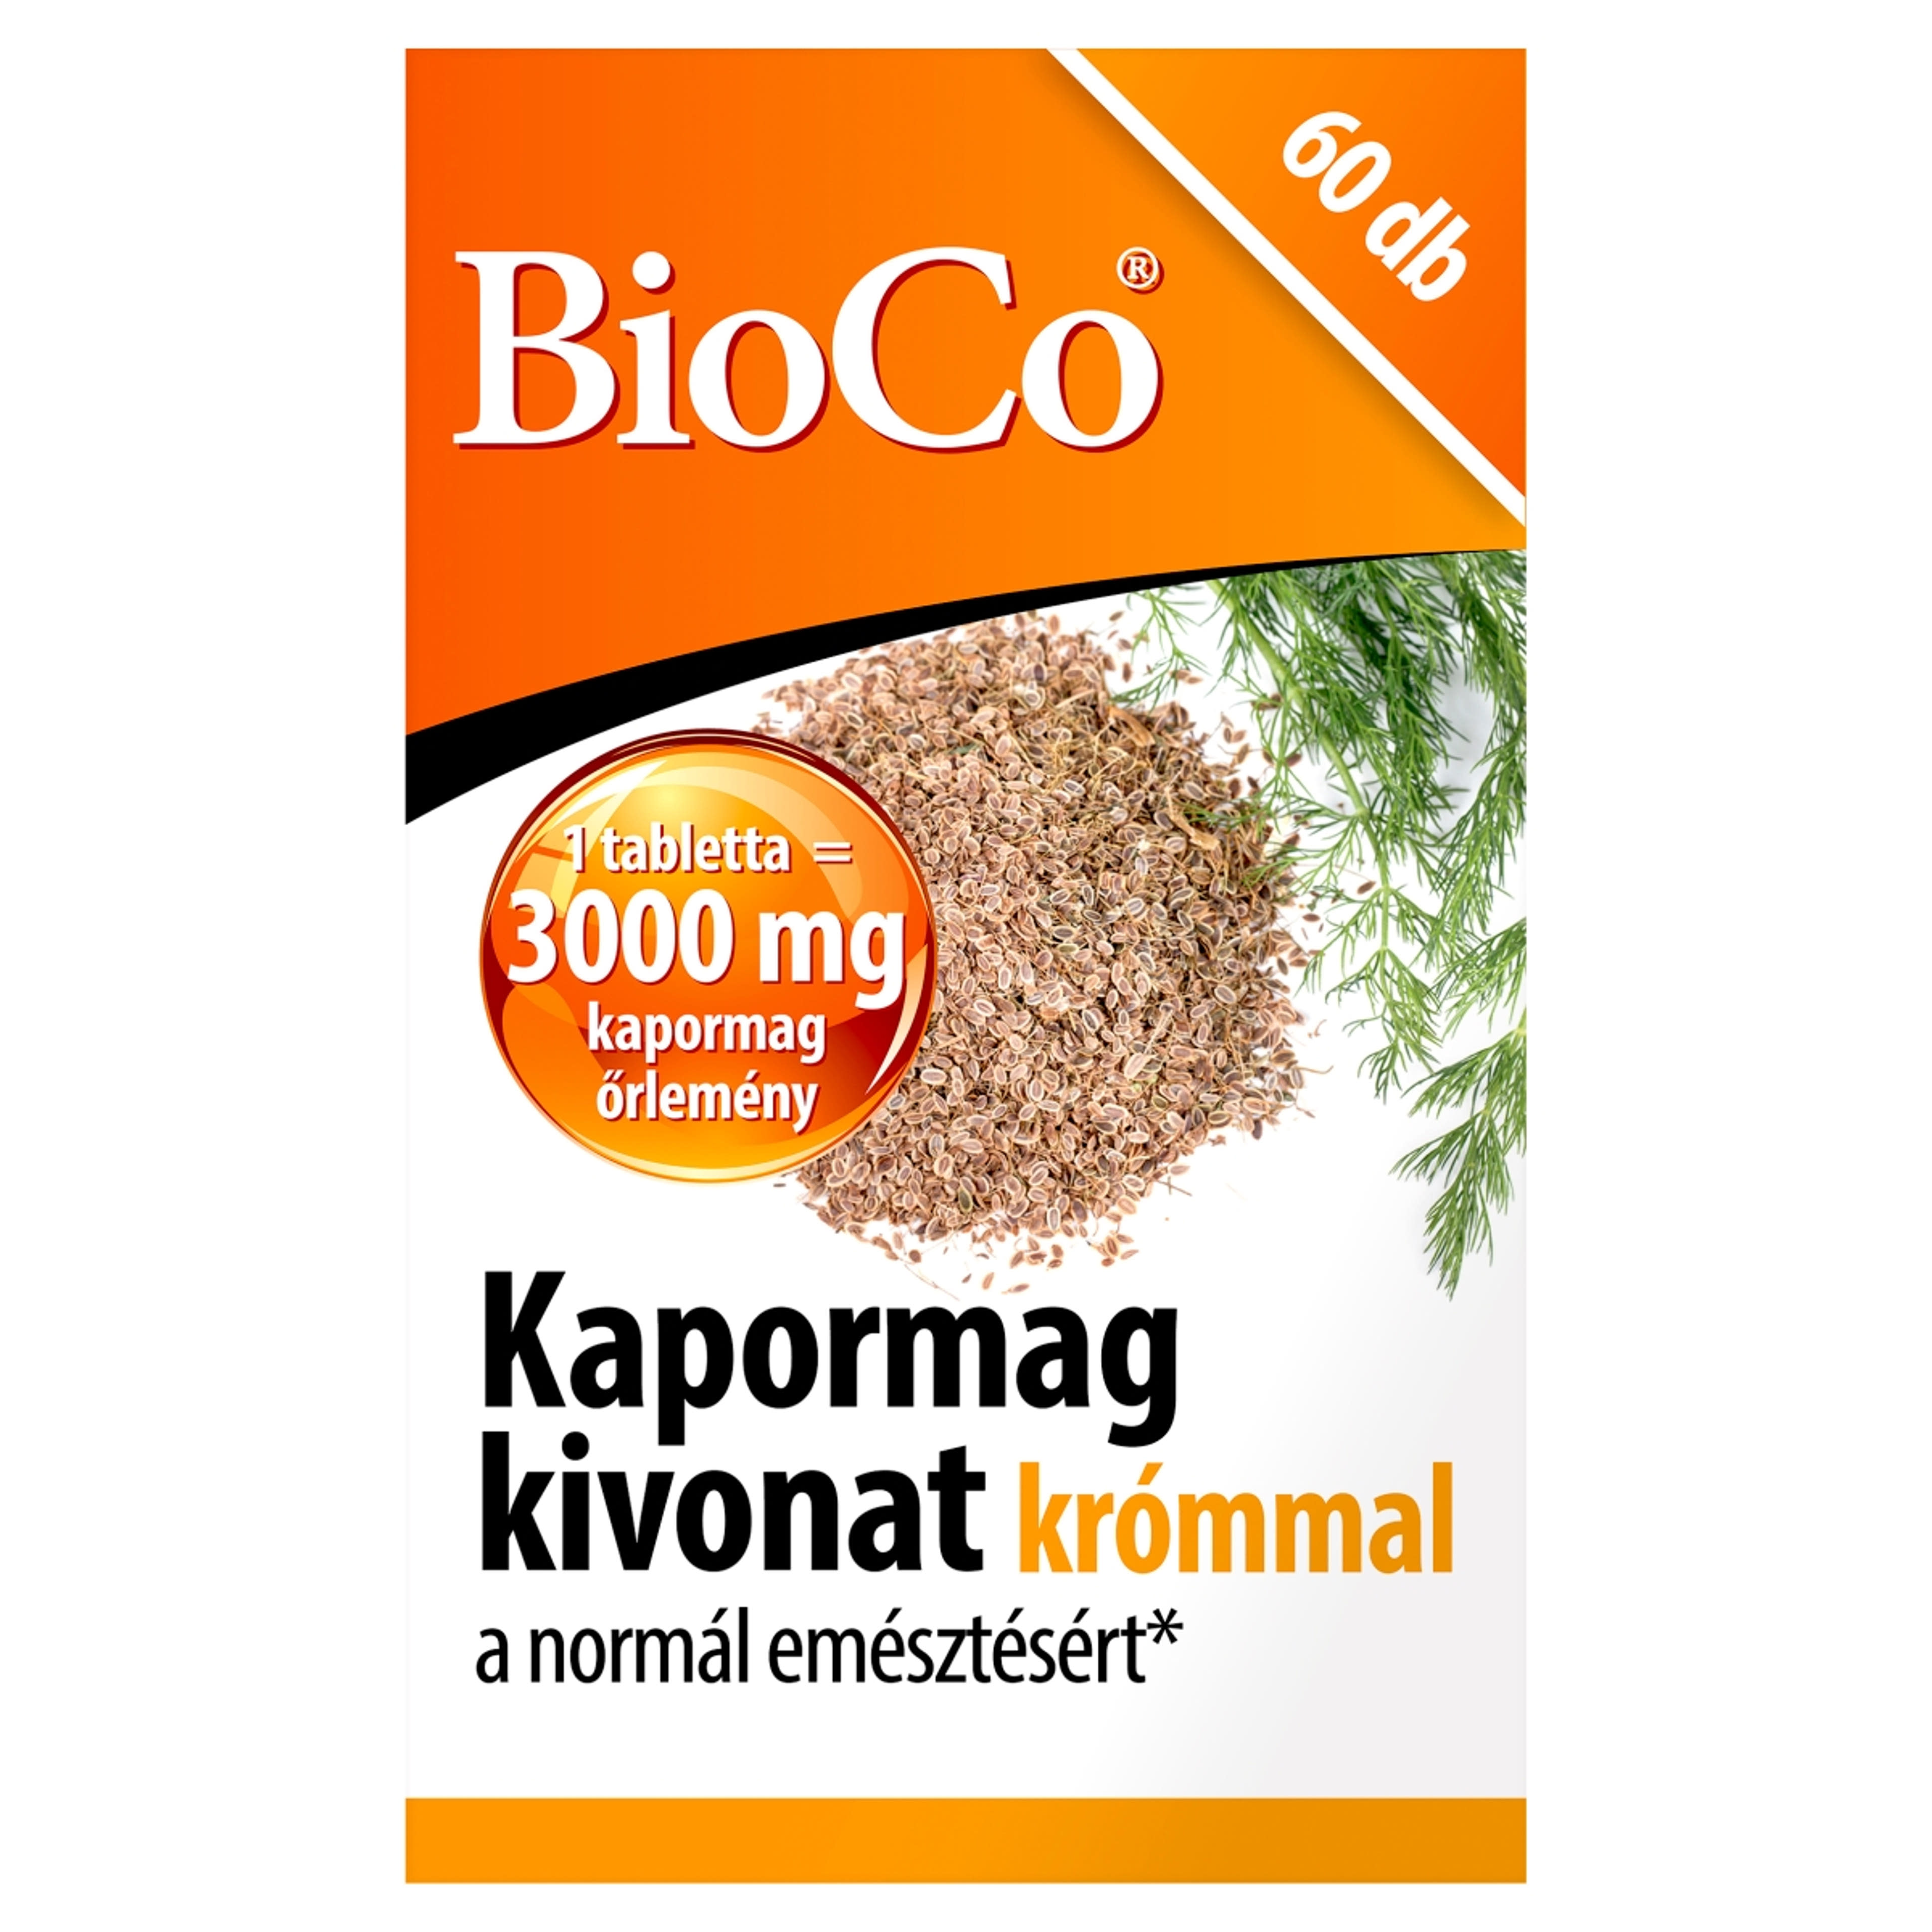 Bioco Kapormag kivonat Krómmal étrenkiegészítő tabletta - 60 db